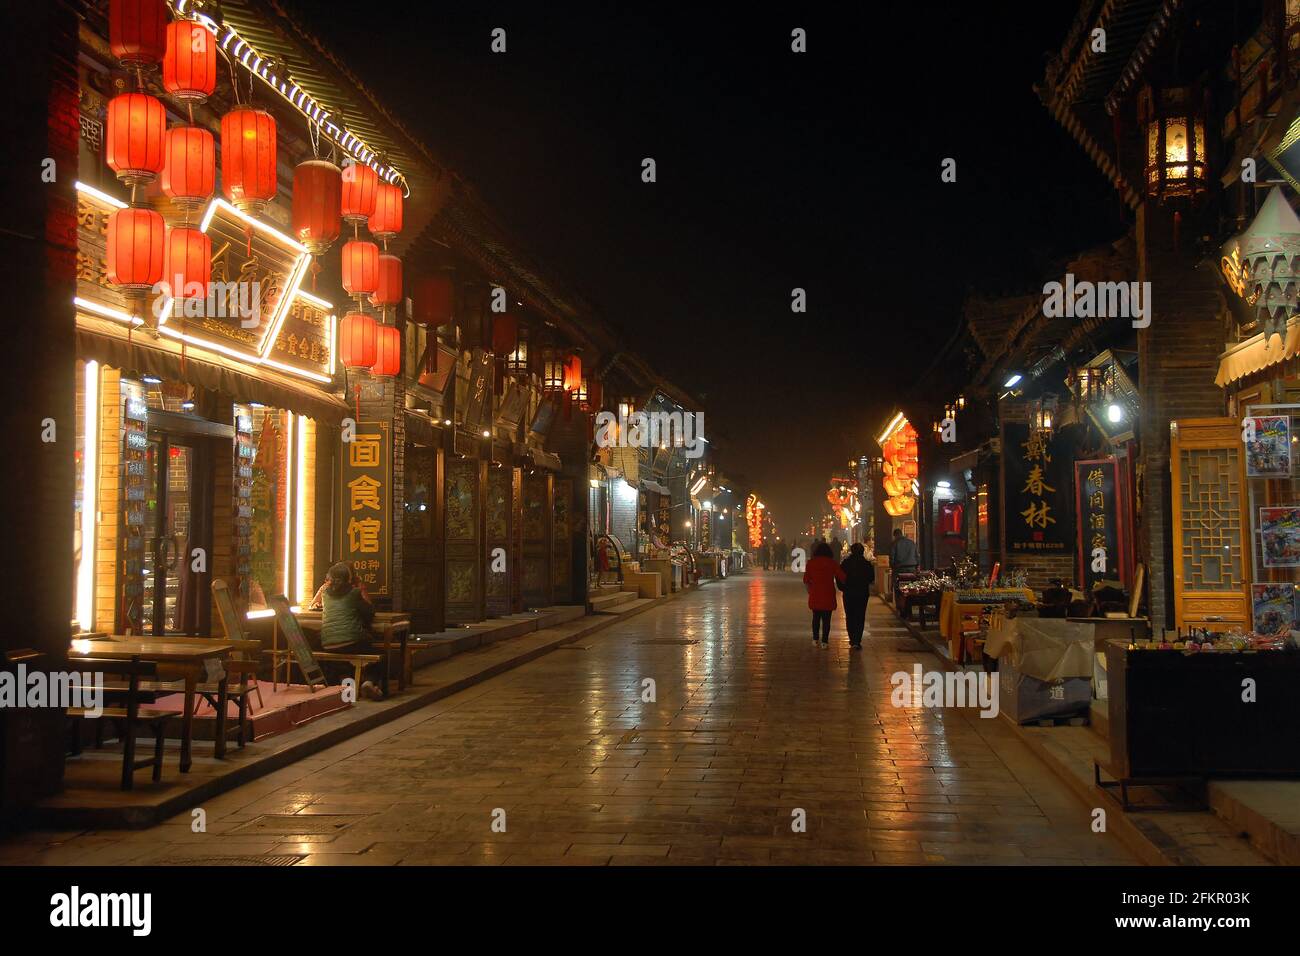 Pingyao dans la province du Shanxi, Chine: Scène de rue à Pingyao la nuit avec lumières de la ville et lanternes rouges. Rue avec restaurants et magasins à Pingyao. Banque D'Images